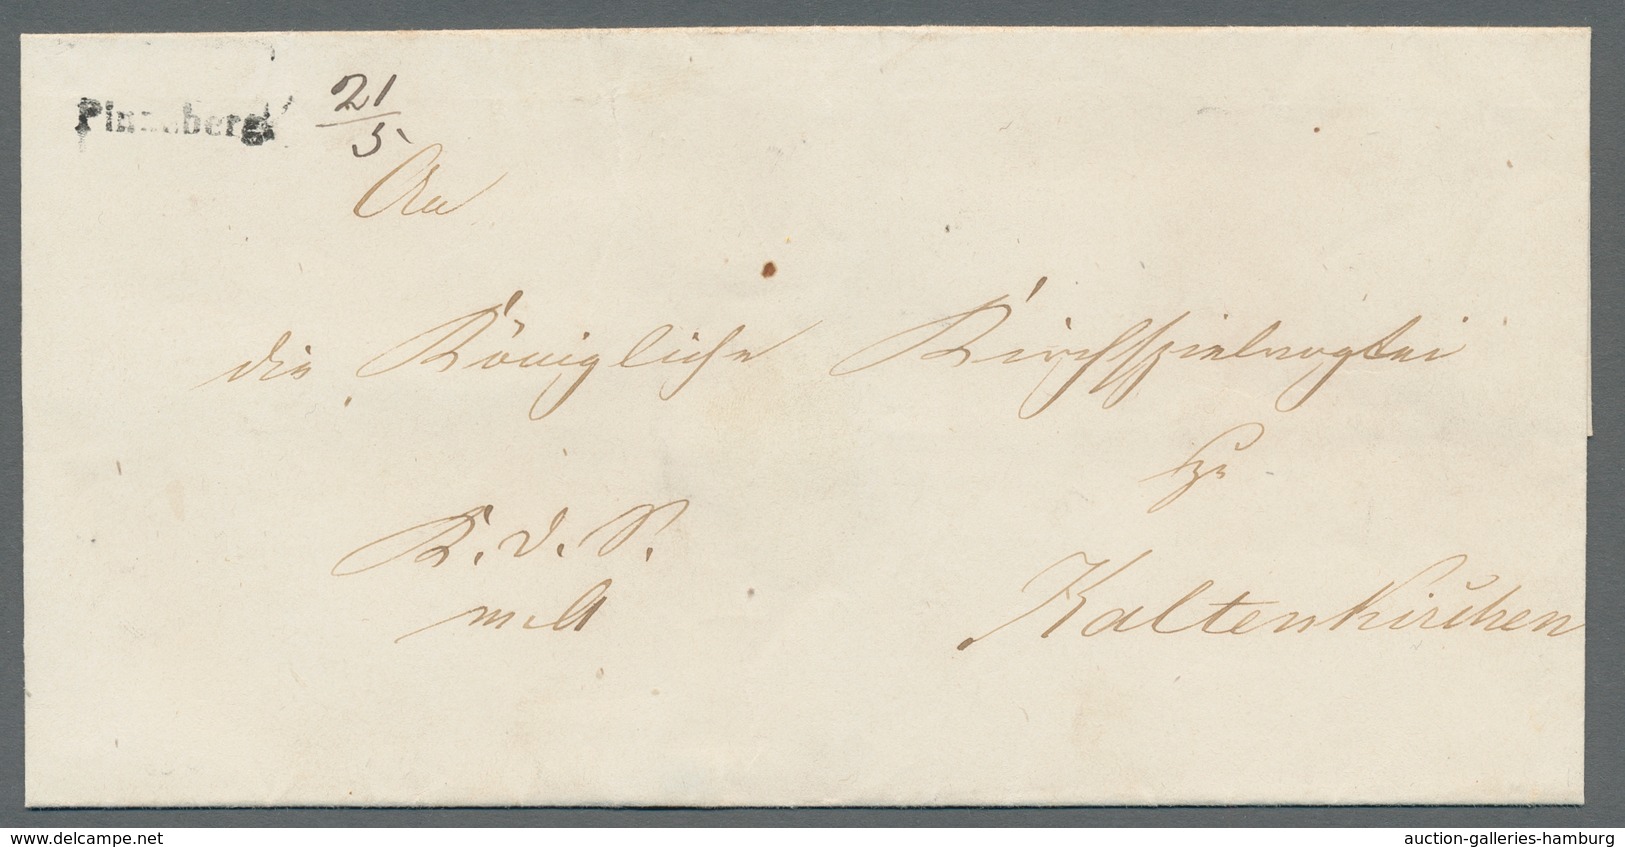 Baden - Marken und Briefe: 1851-1868, gestempelte Sammlung auf losen Albumseiten mit etlichen besser